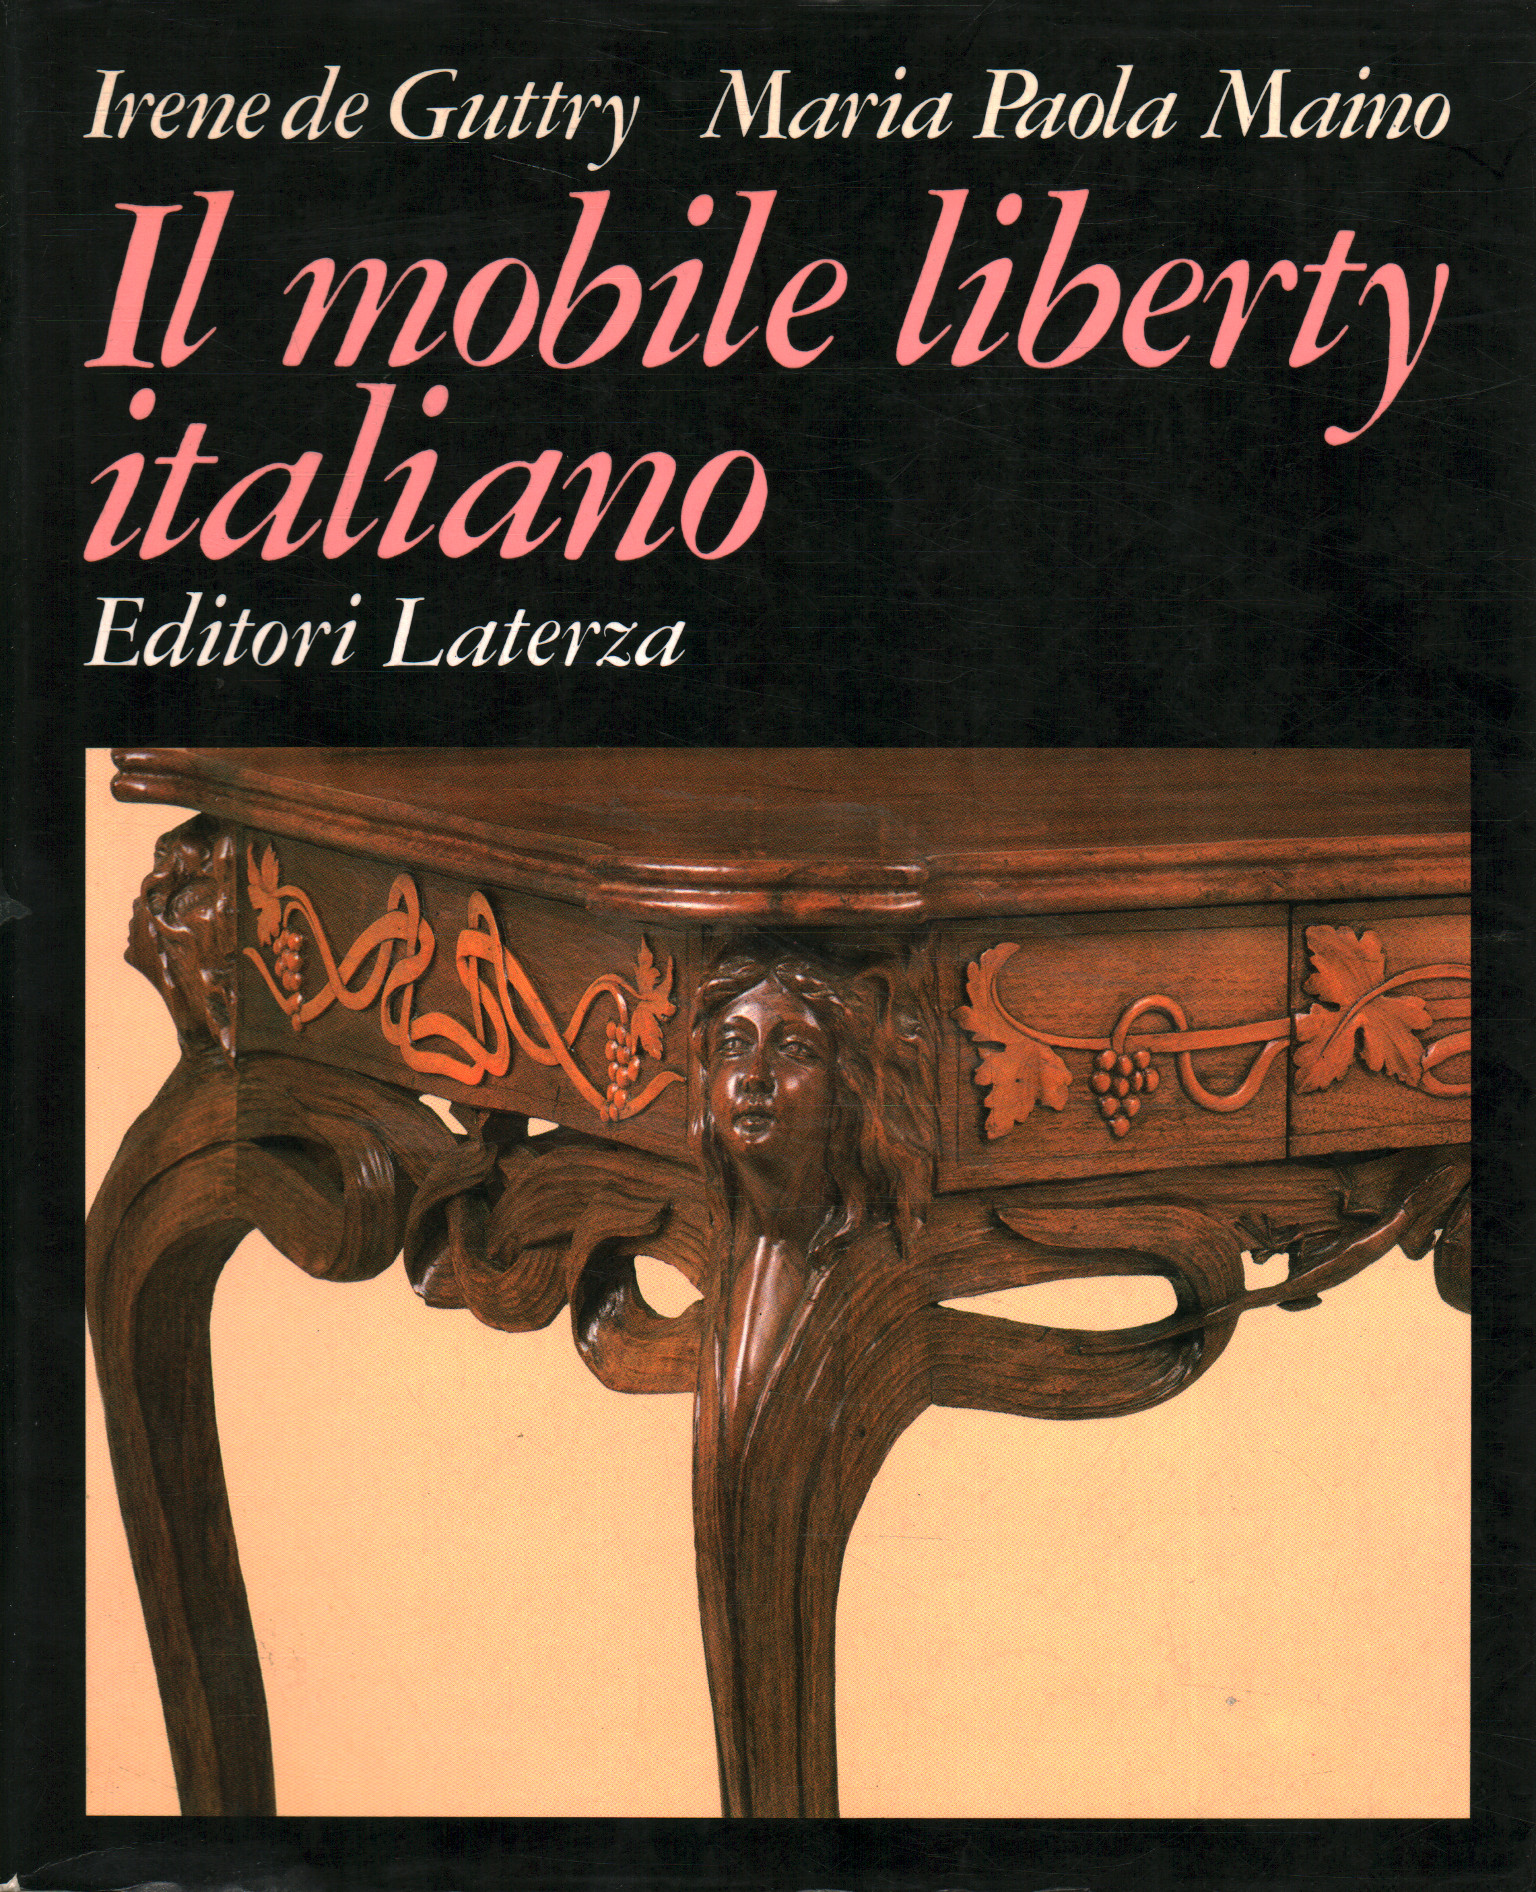 Los muebles Liberty italianos.